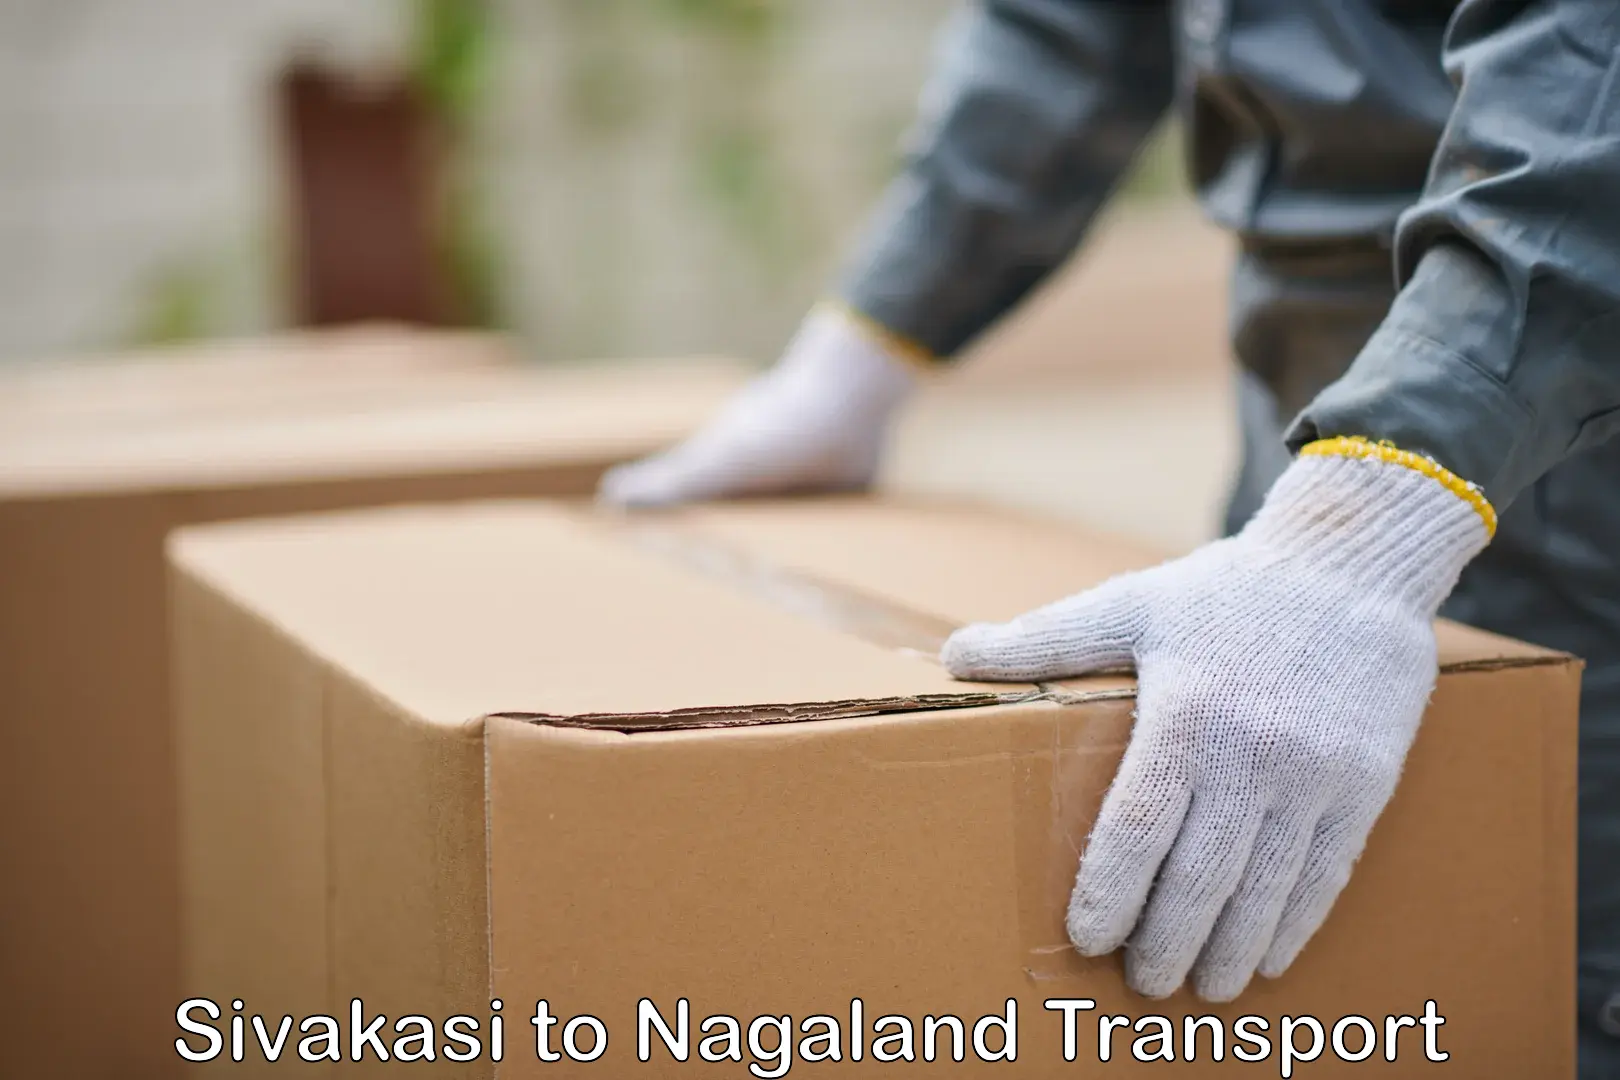 Lorry transport service Sivakasi to Nagaland